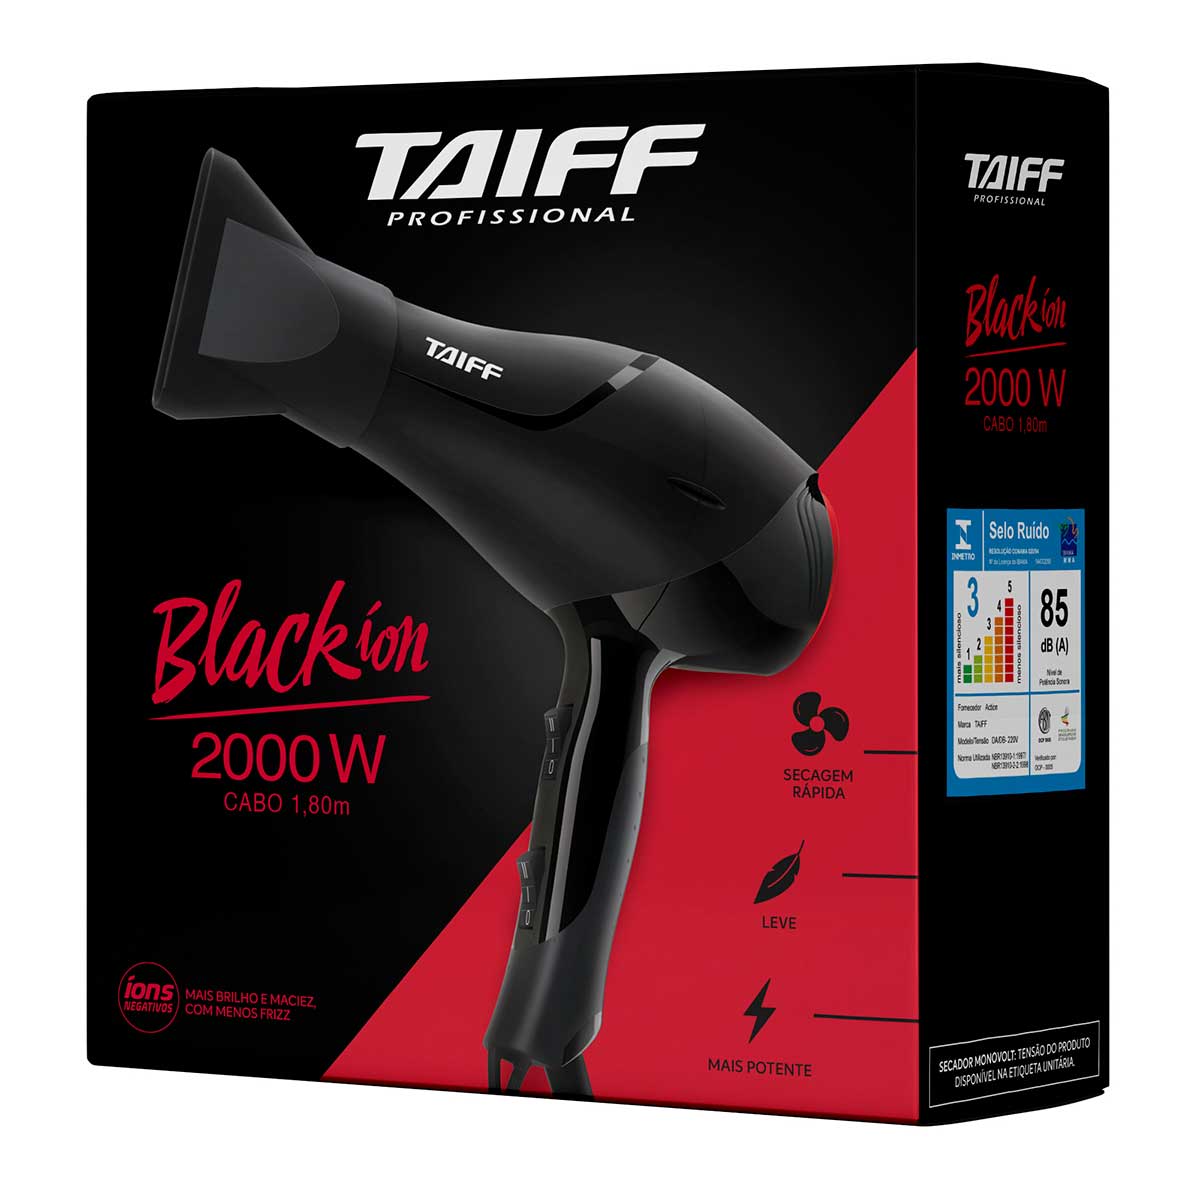 secador-de-cabelo-taiff-black-ion-2000w-black-110v-6.jpg